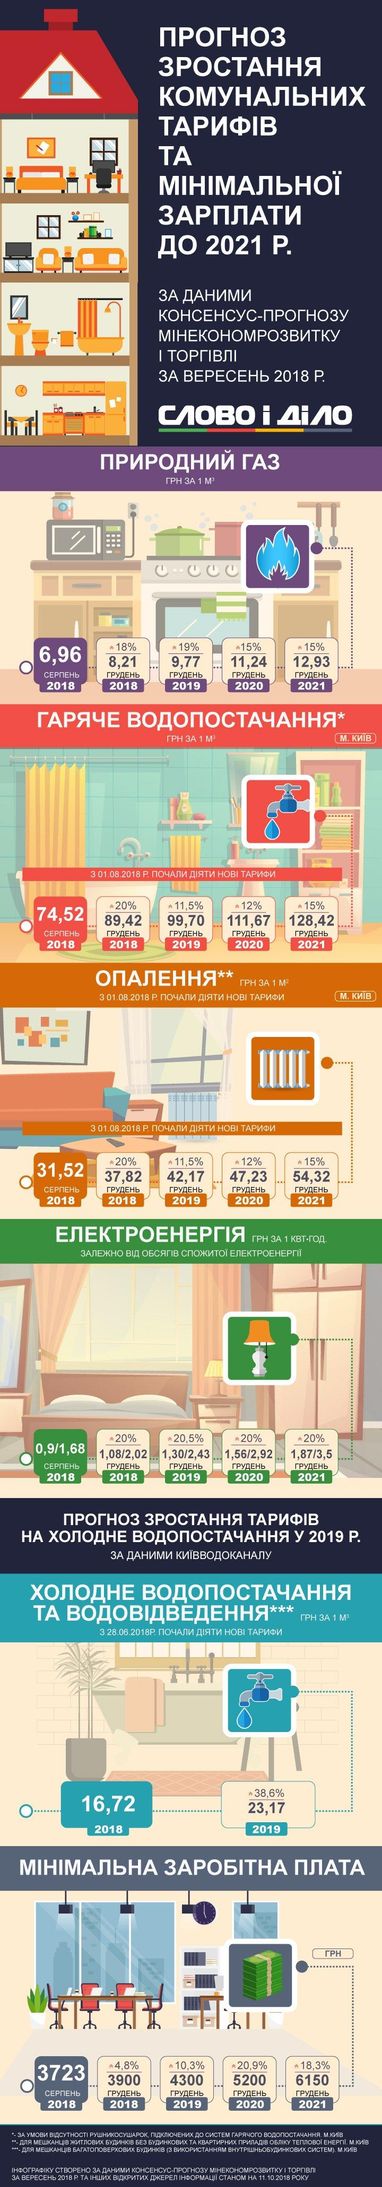 Как в Украине вырастет коммуналка: прогноз до 2021 года (инфографика)